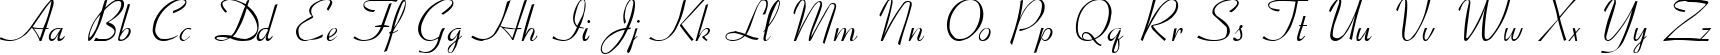 Пример написания английского алфавита шрифтом Ribbon